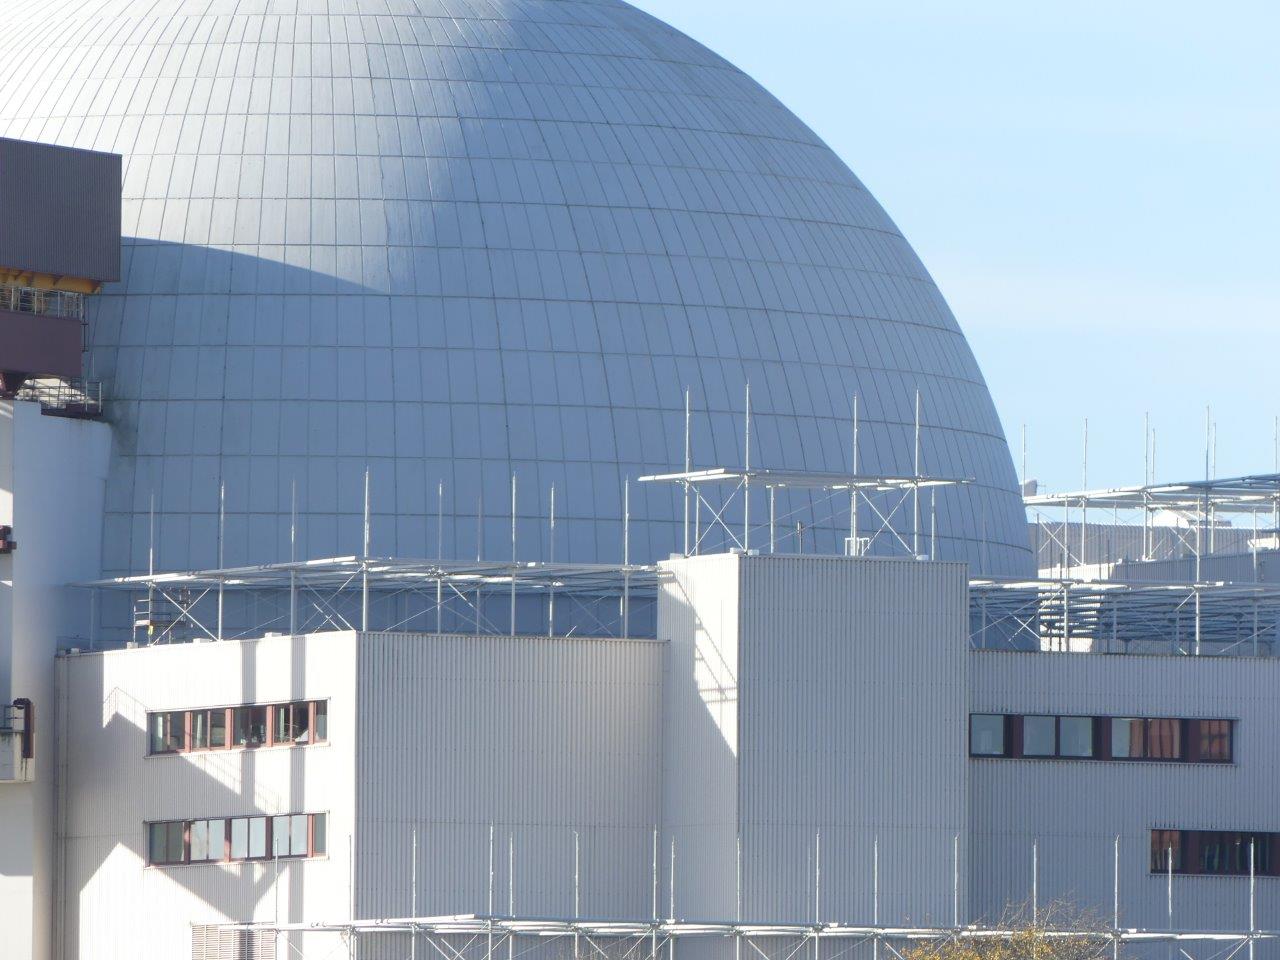 Atomenergie und Terrorschutz: Bundesregierung bringt 17. Atomgesetznovelle auf den Weg